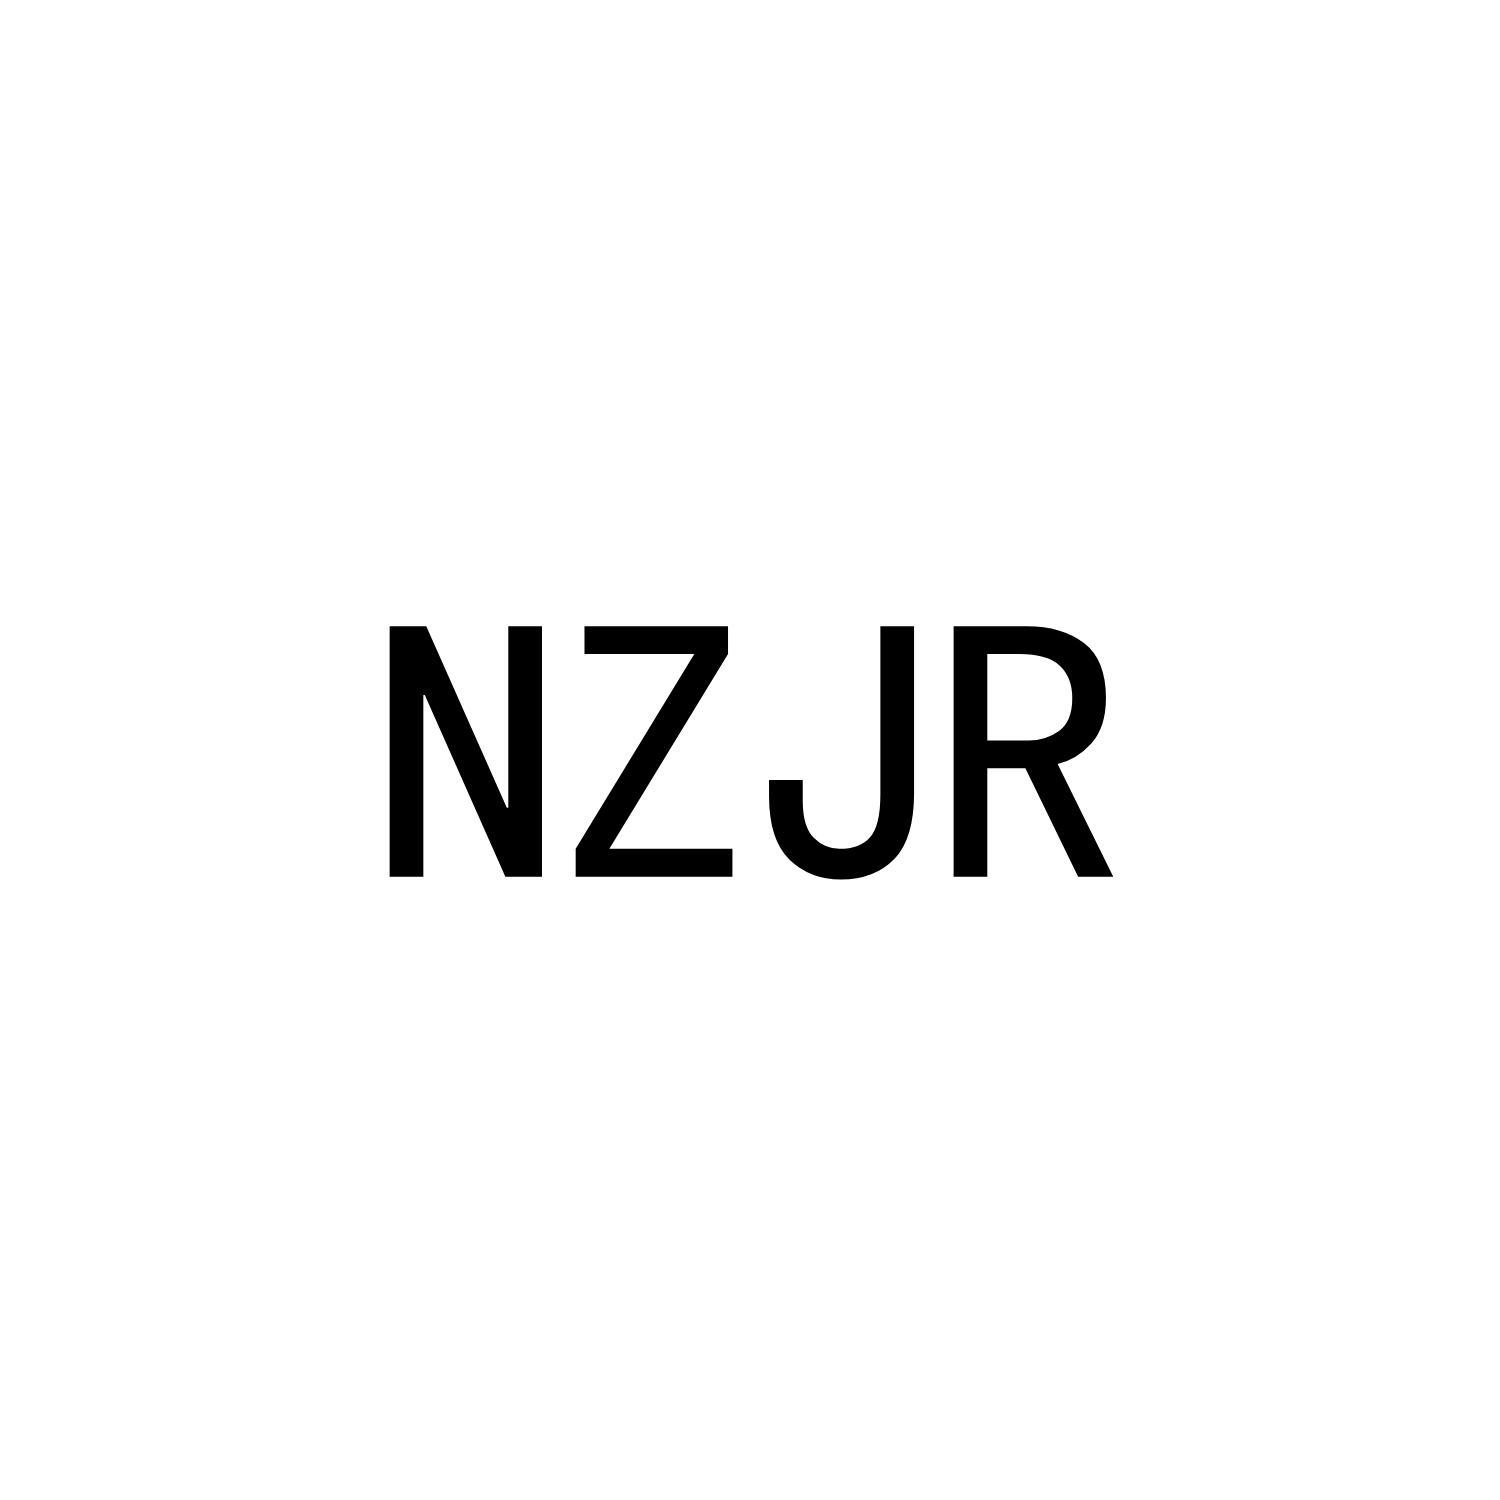 NZJR